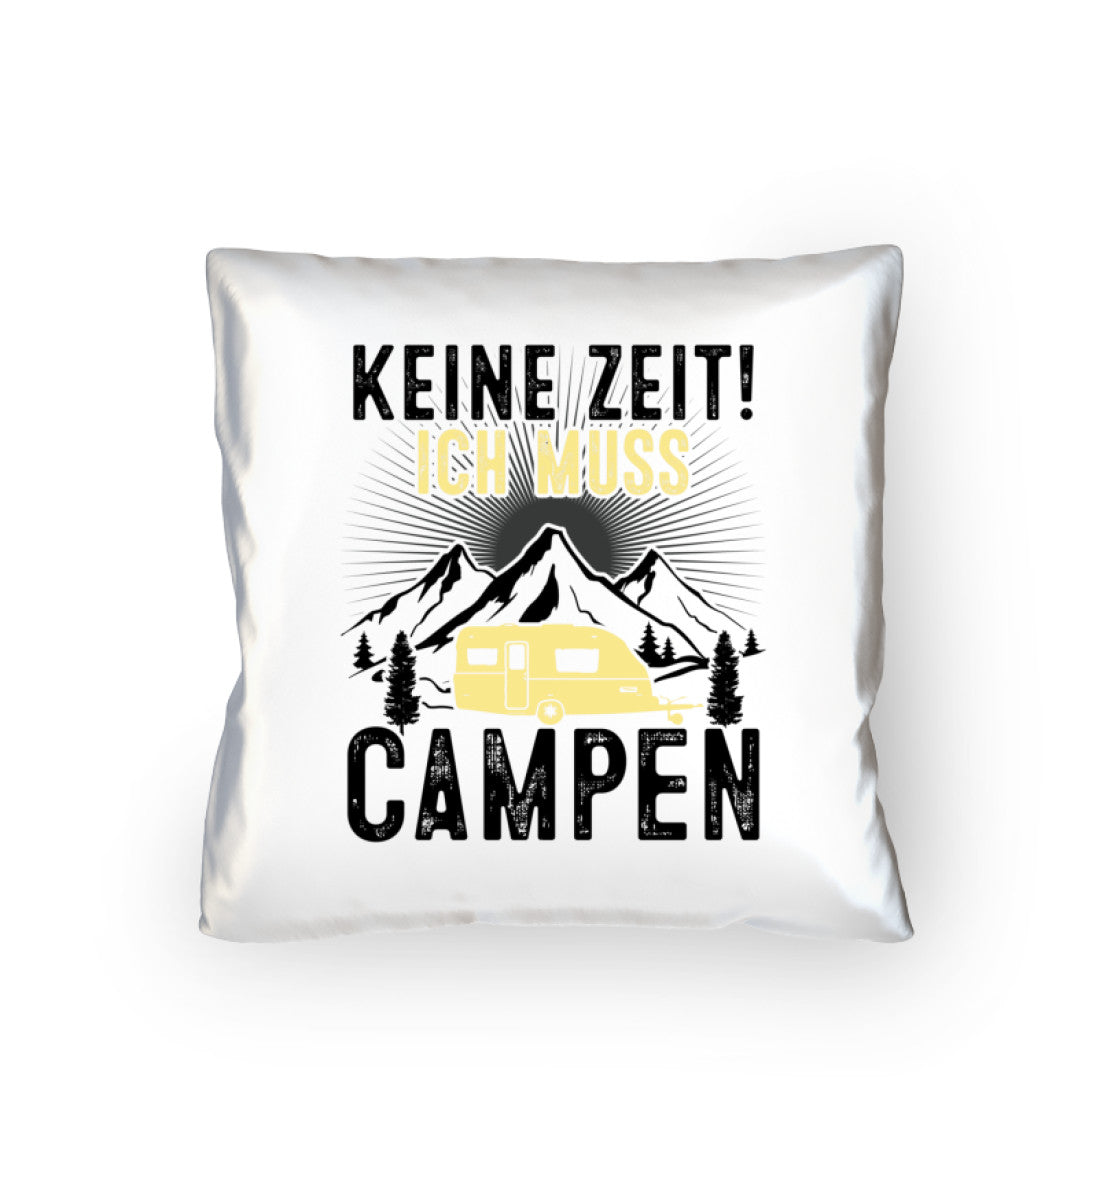 Keine Zeit ich muss Campen - Kissen (40x40cm) camping mountainbike Default Title